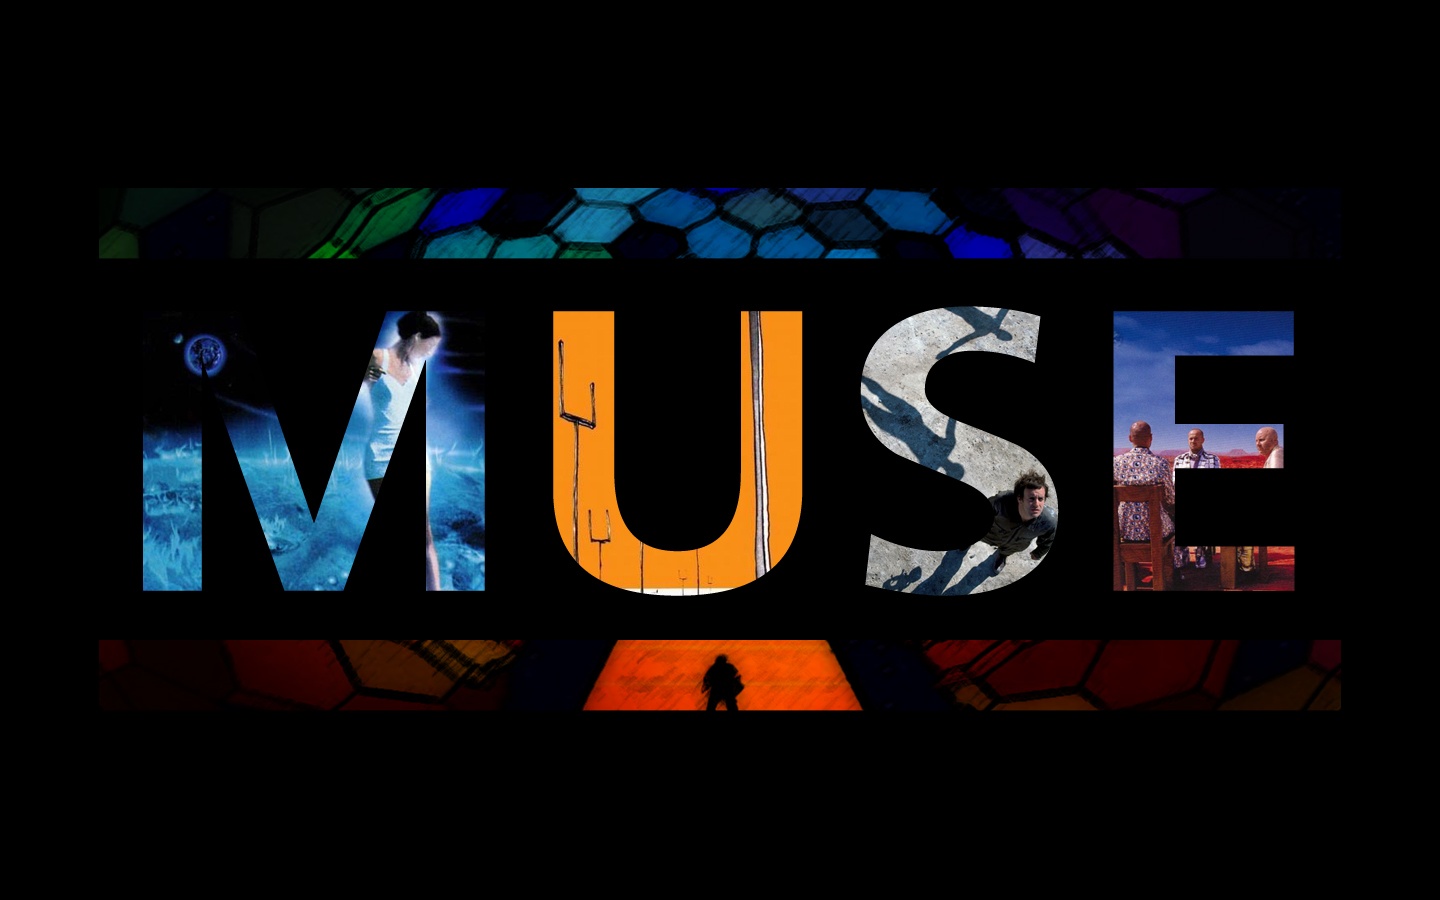 Muse Band Logo - wallpaper.